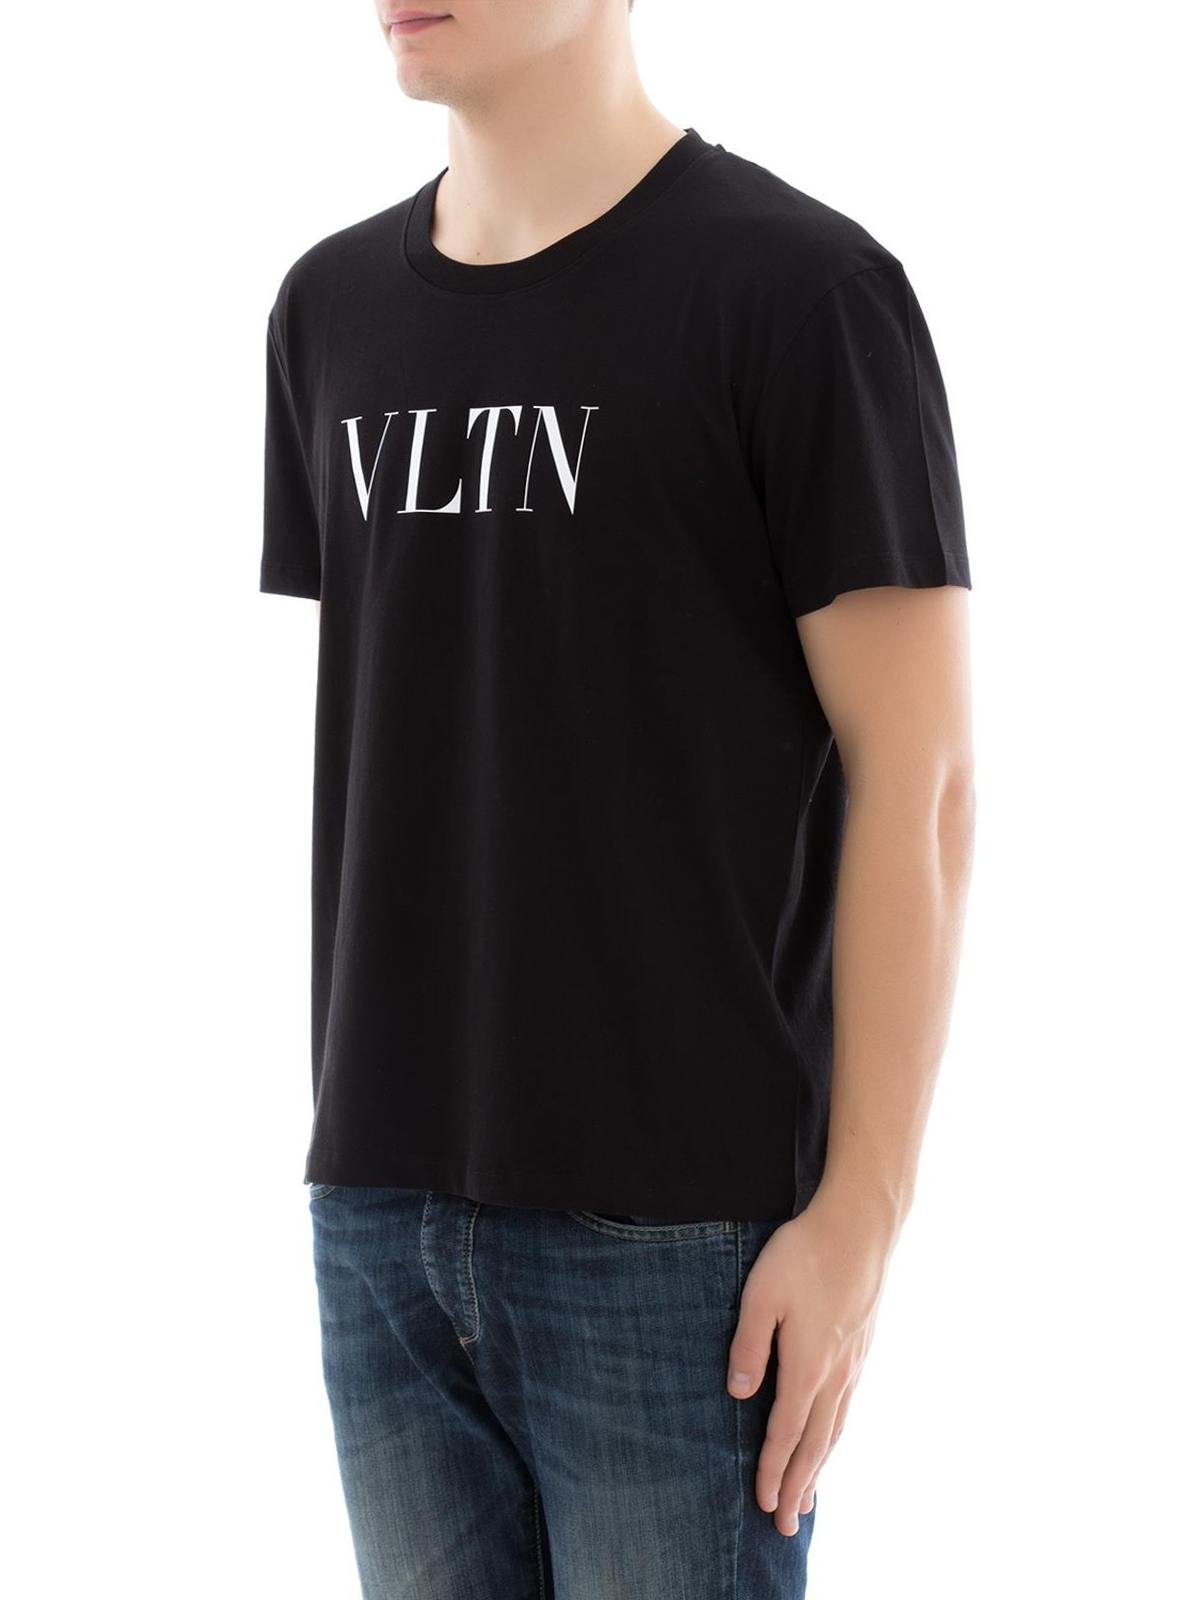 VALENTINO VLTN Tシャツ